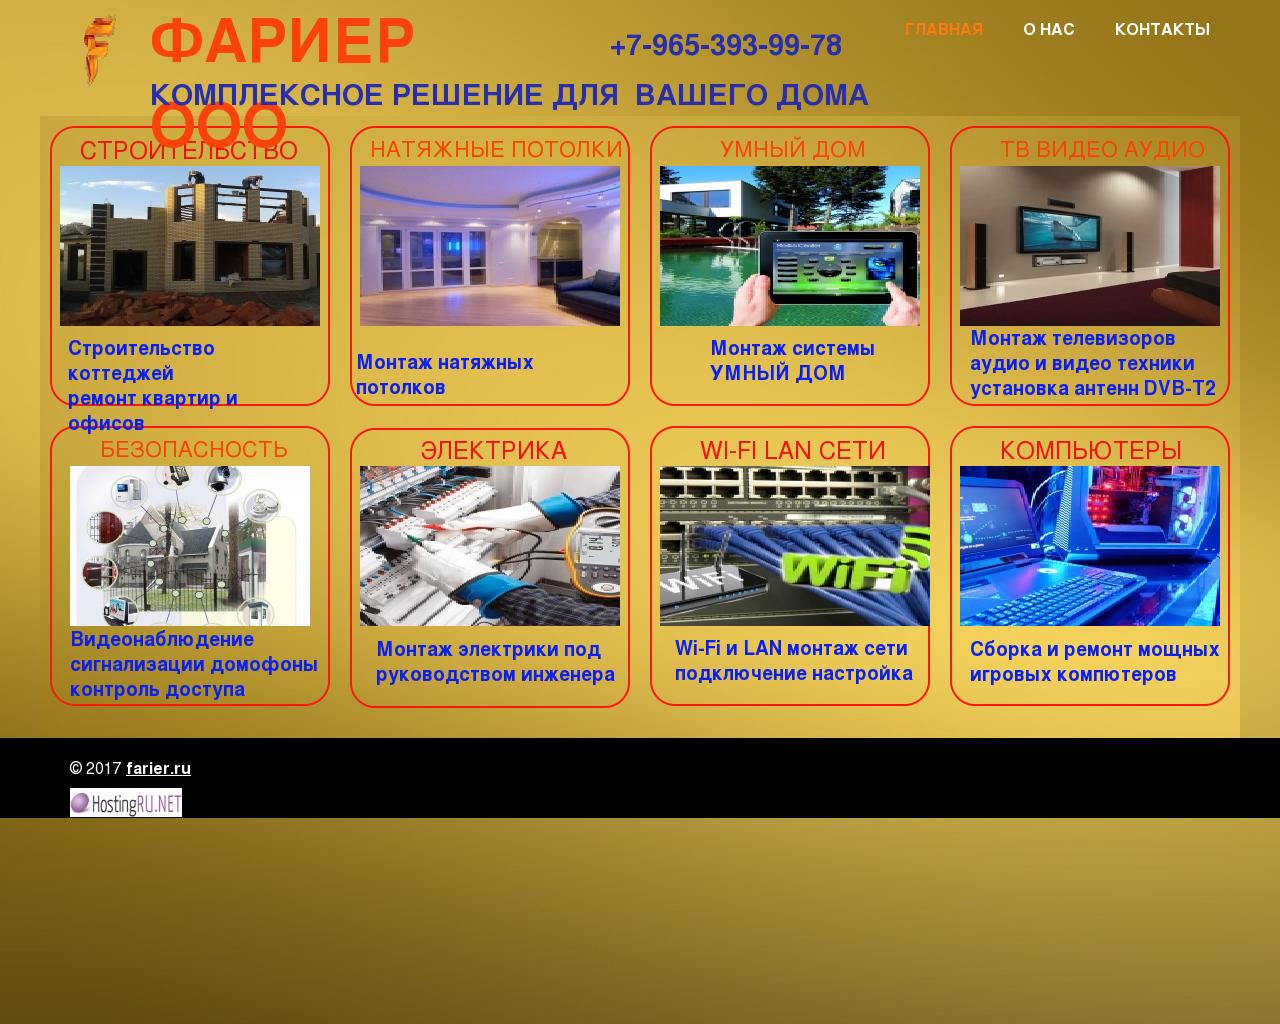 Изображение сайта farier.ru в разрешении 1280x1024